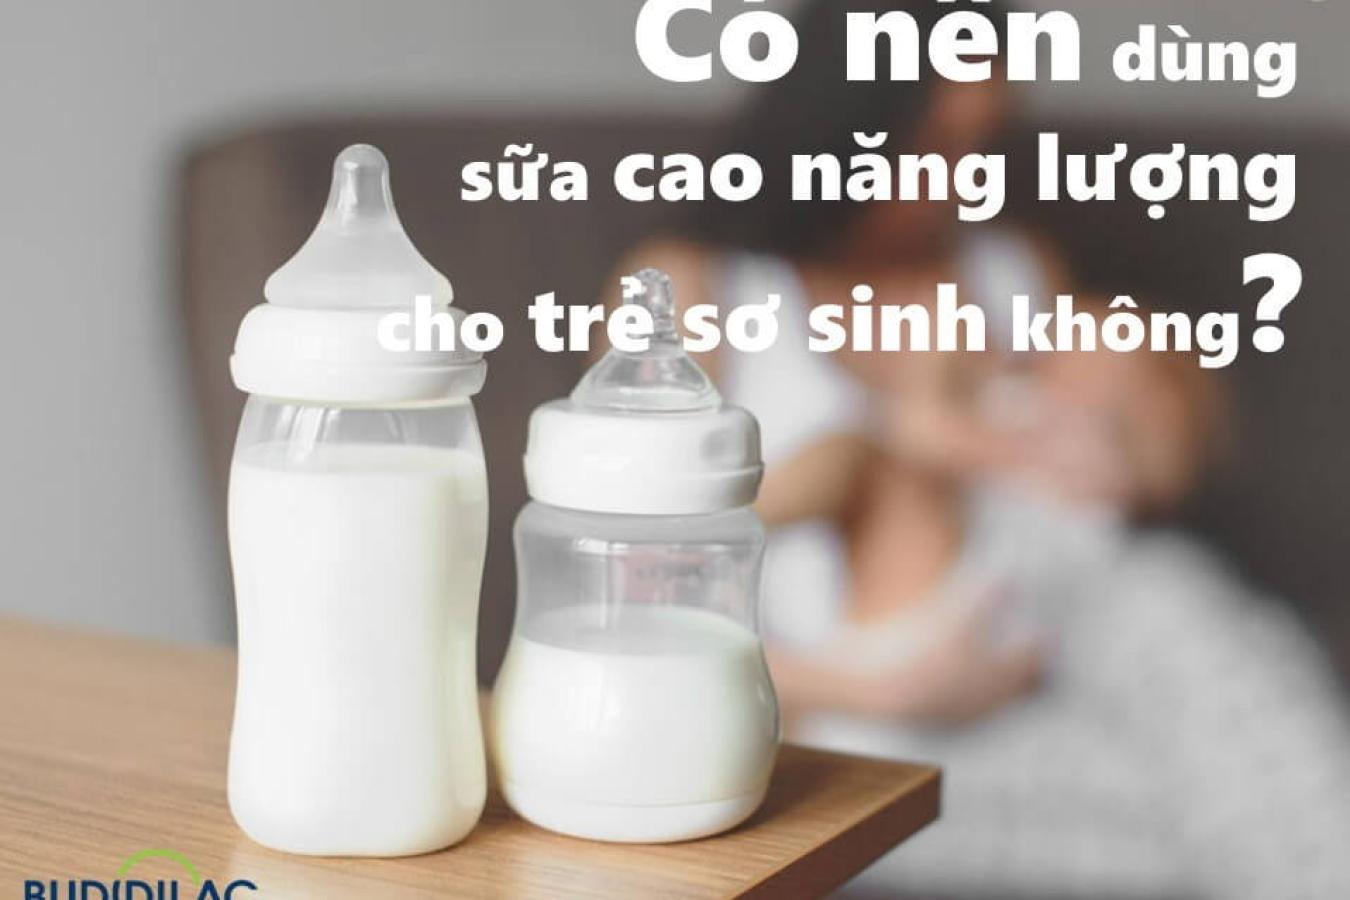 Có nên dùng sữa cao năng lượng cho trẻ sơ sinh không?